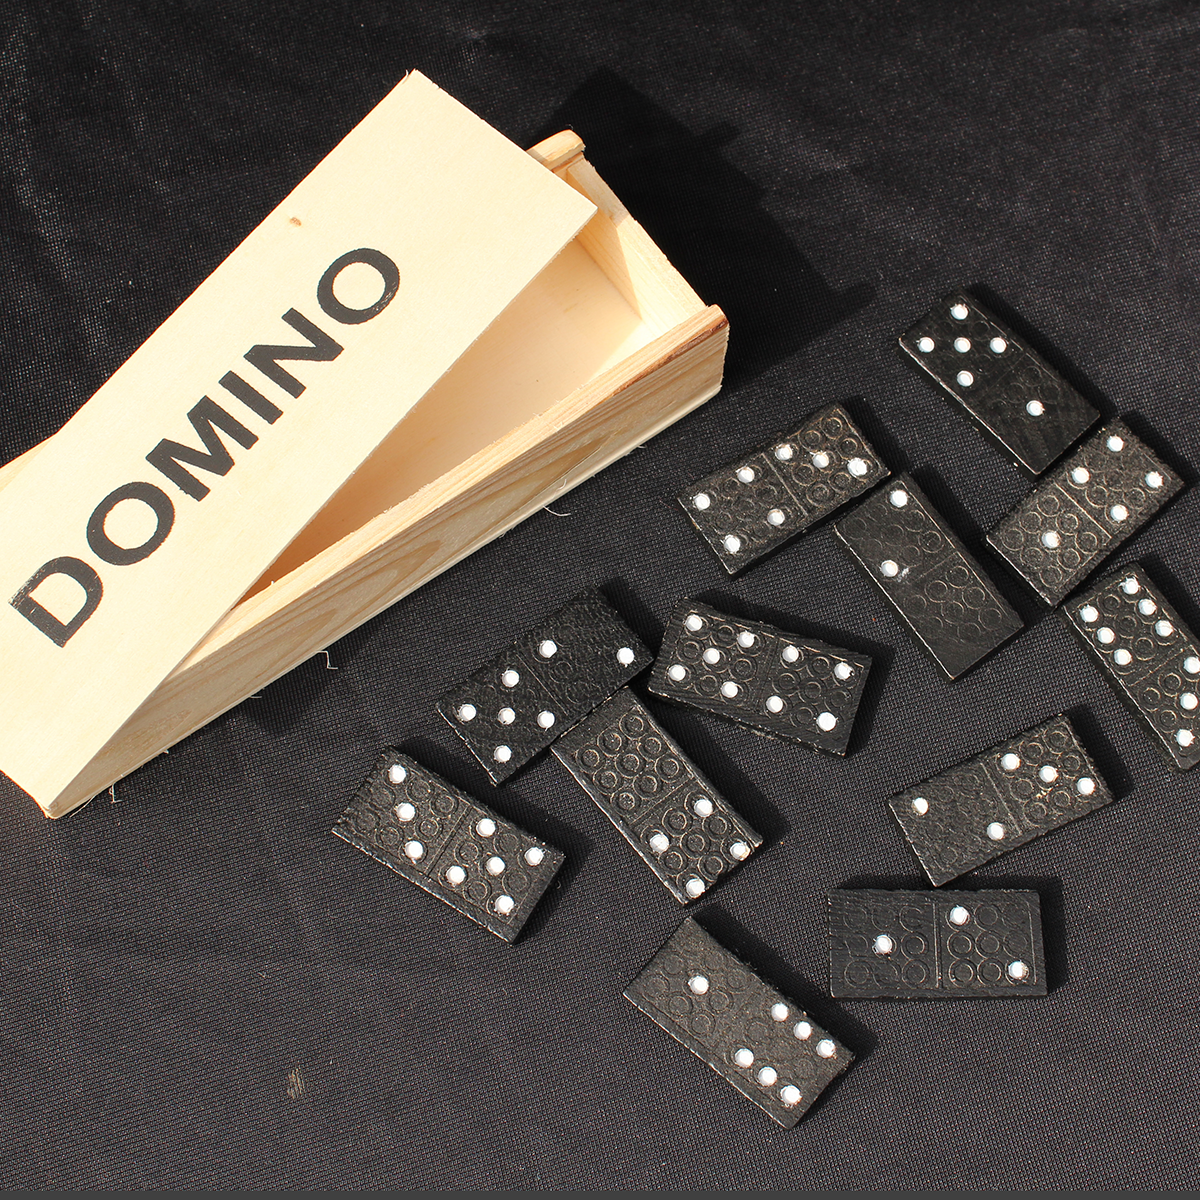 R002-prediccion-domino-1